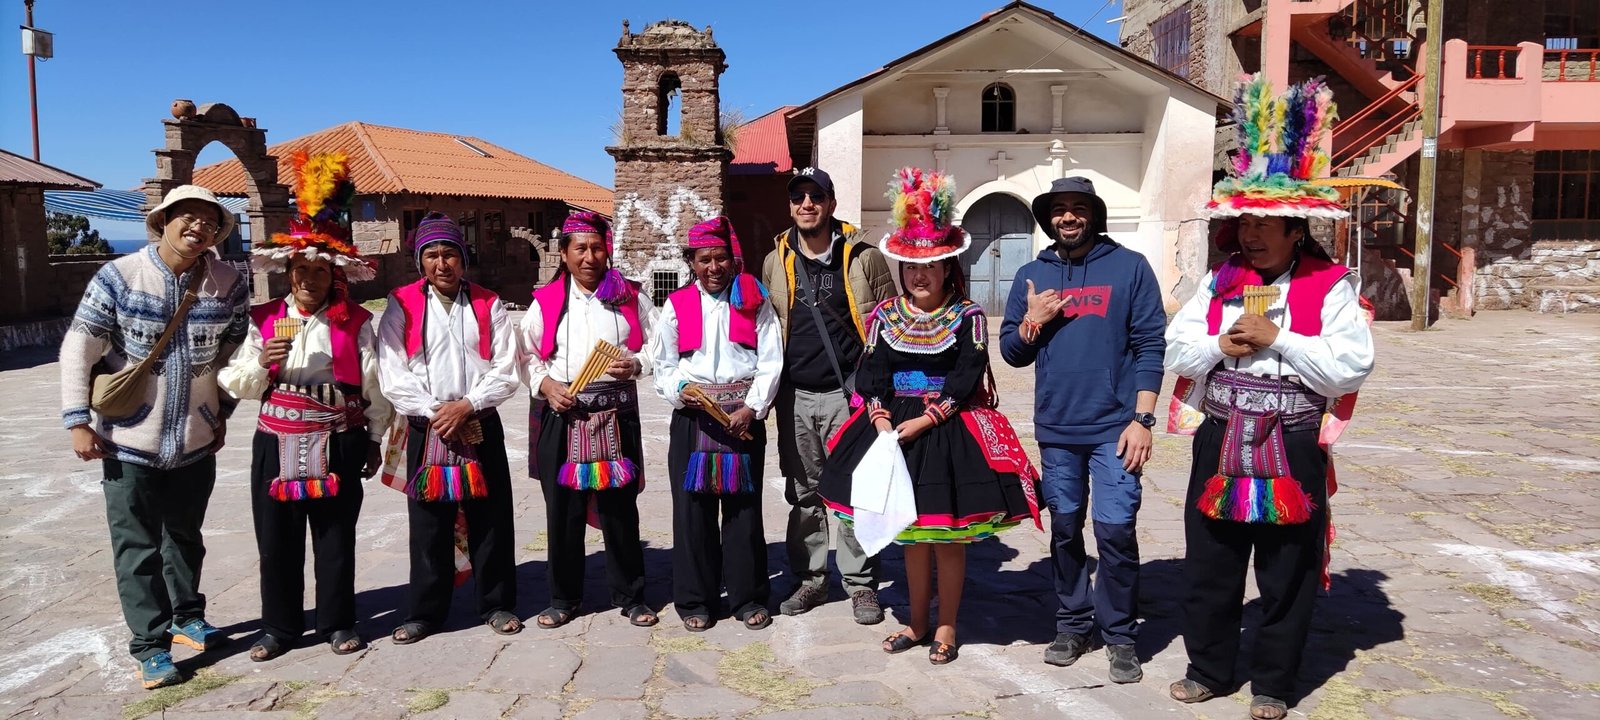 Pumandes Titicaca